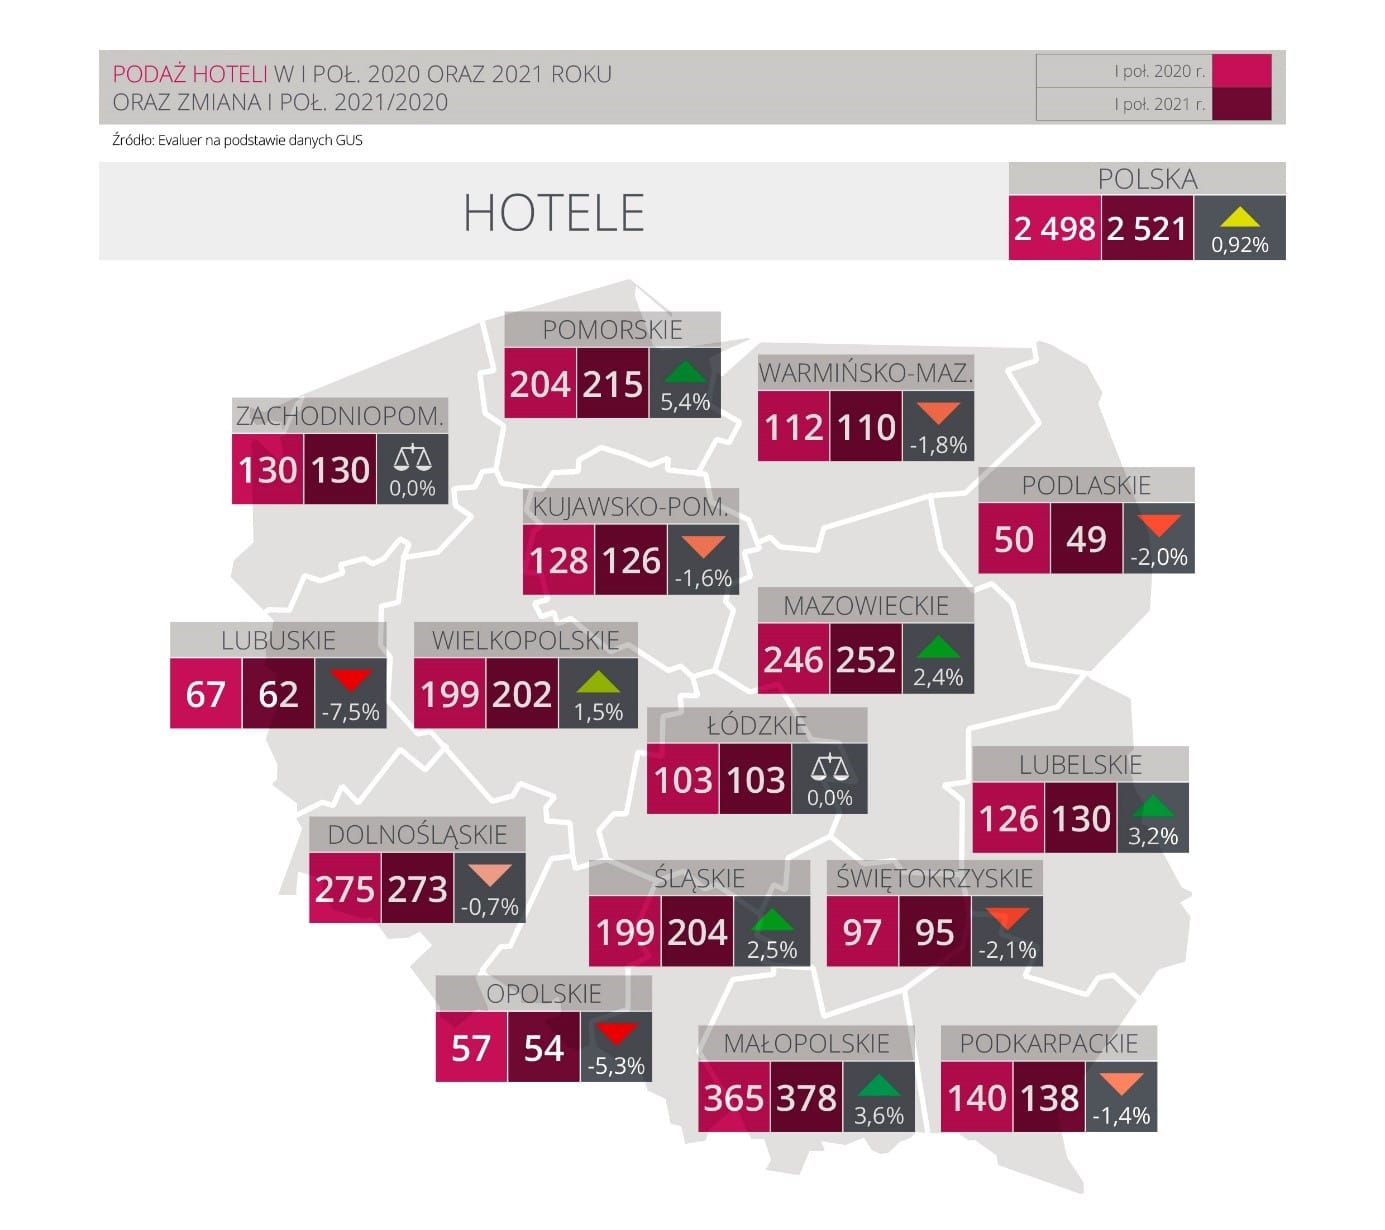 Hotele z 29% wzrostem gości, ale wciąż poniżej poziomu sprzed pandemii